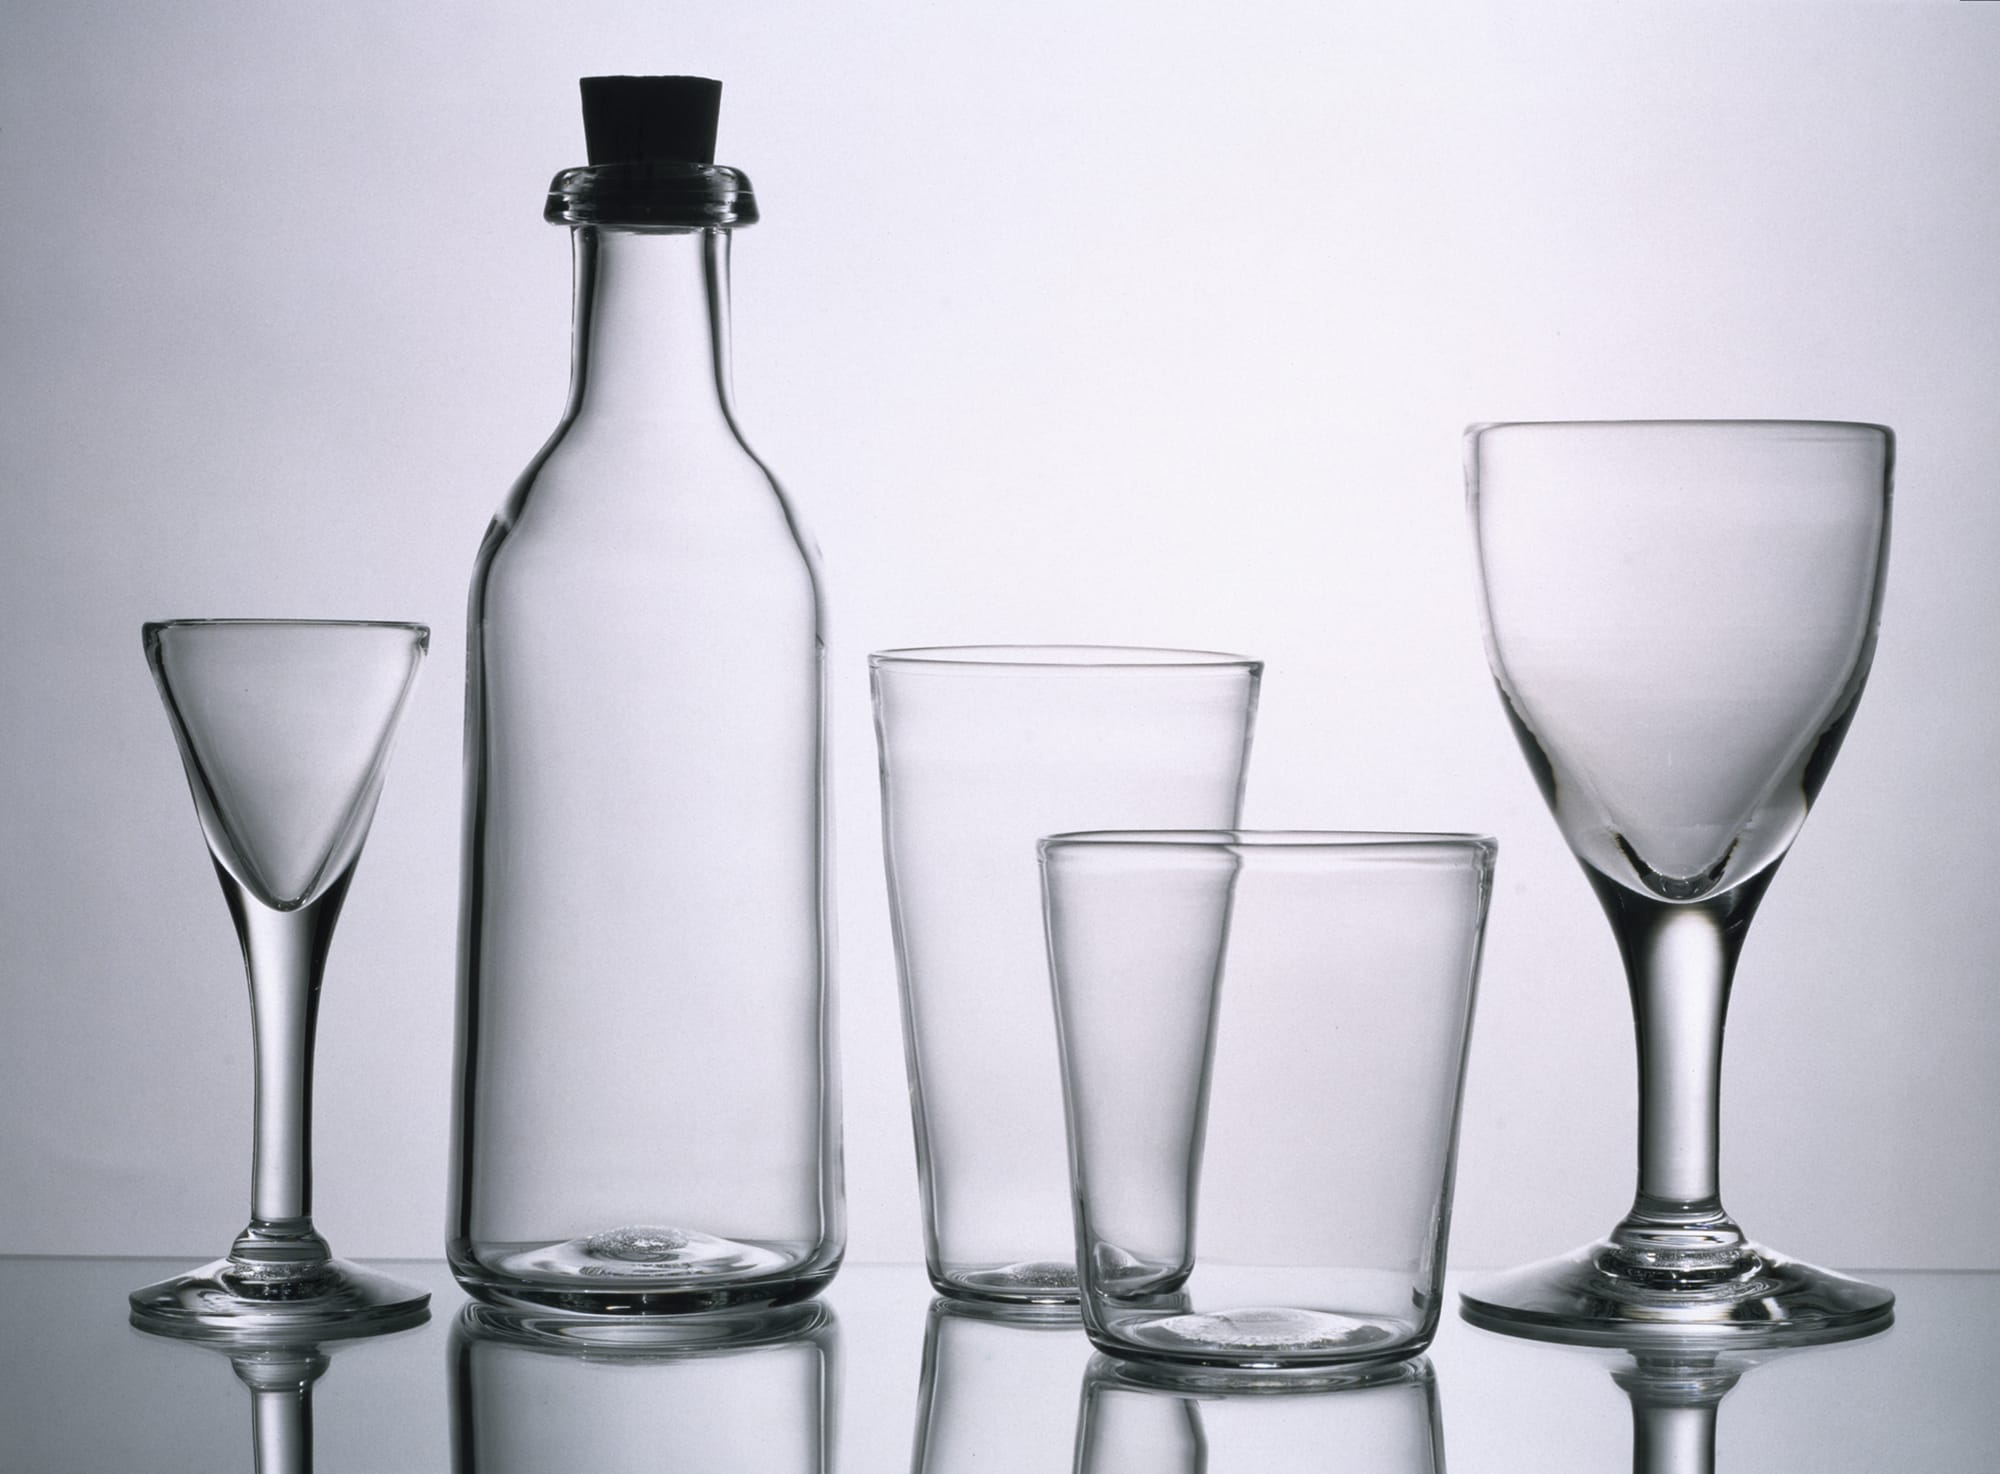 スウェーデンのスクルーフ社のためにデザインしたグラスとワインボトル。